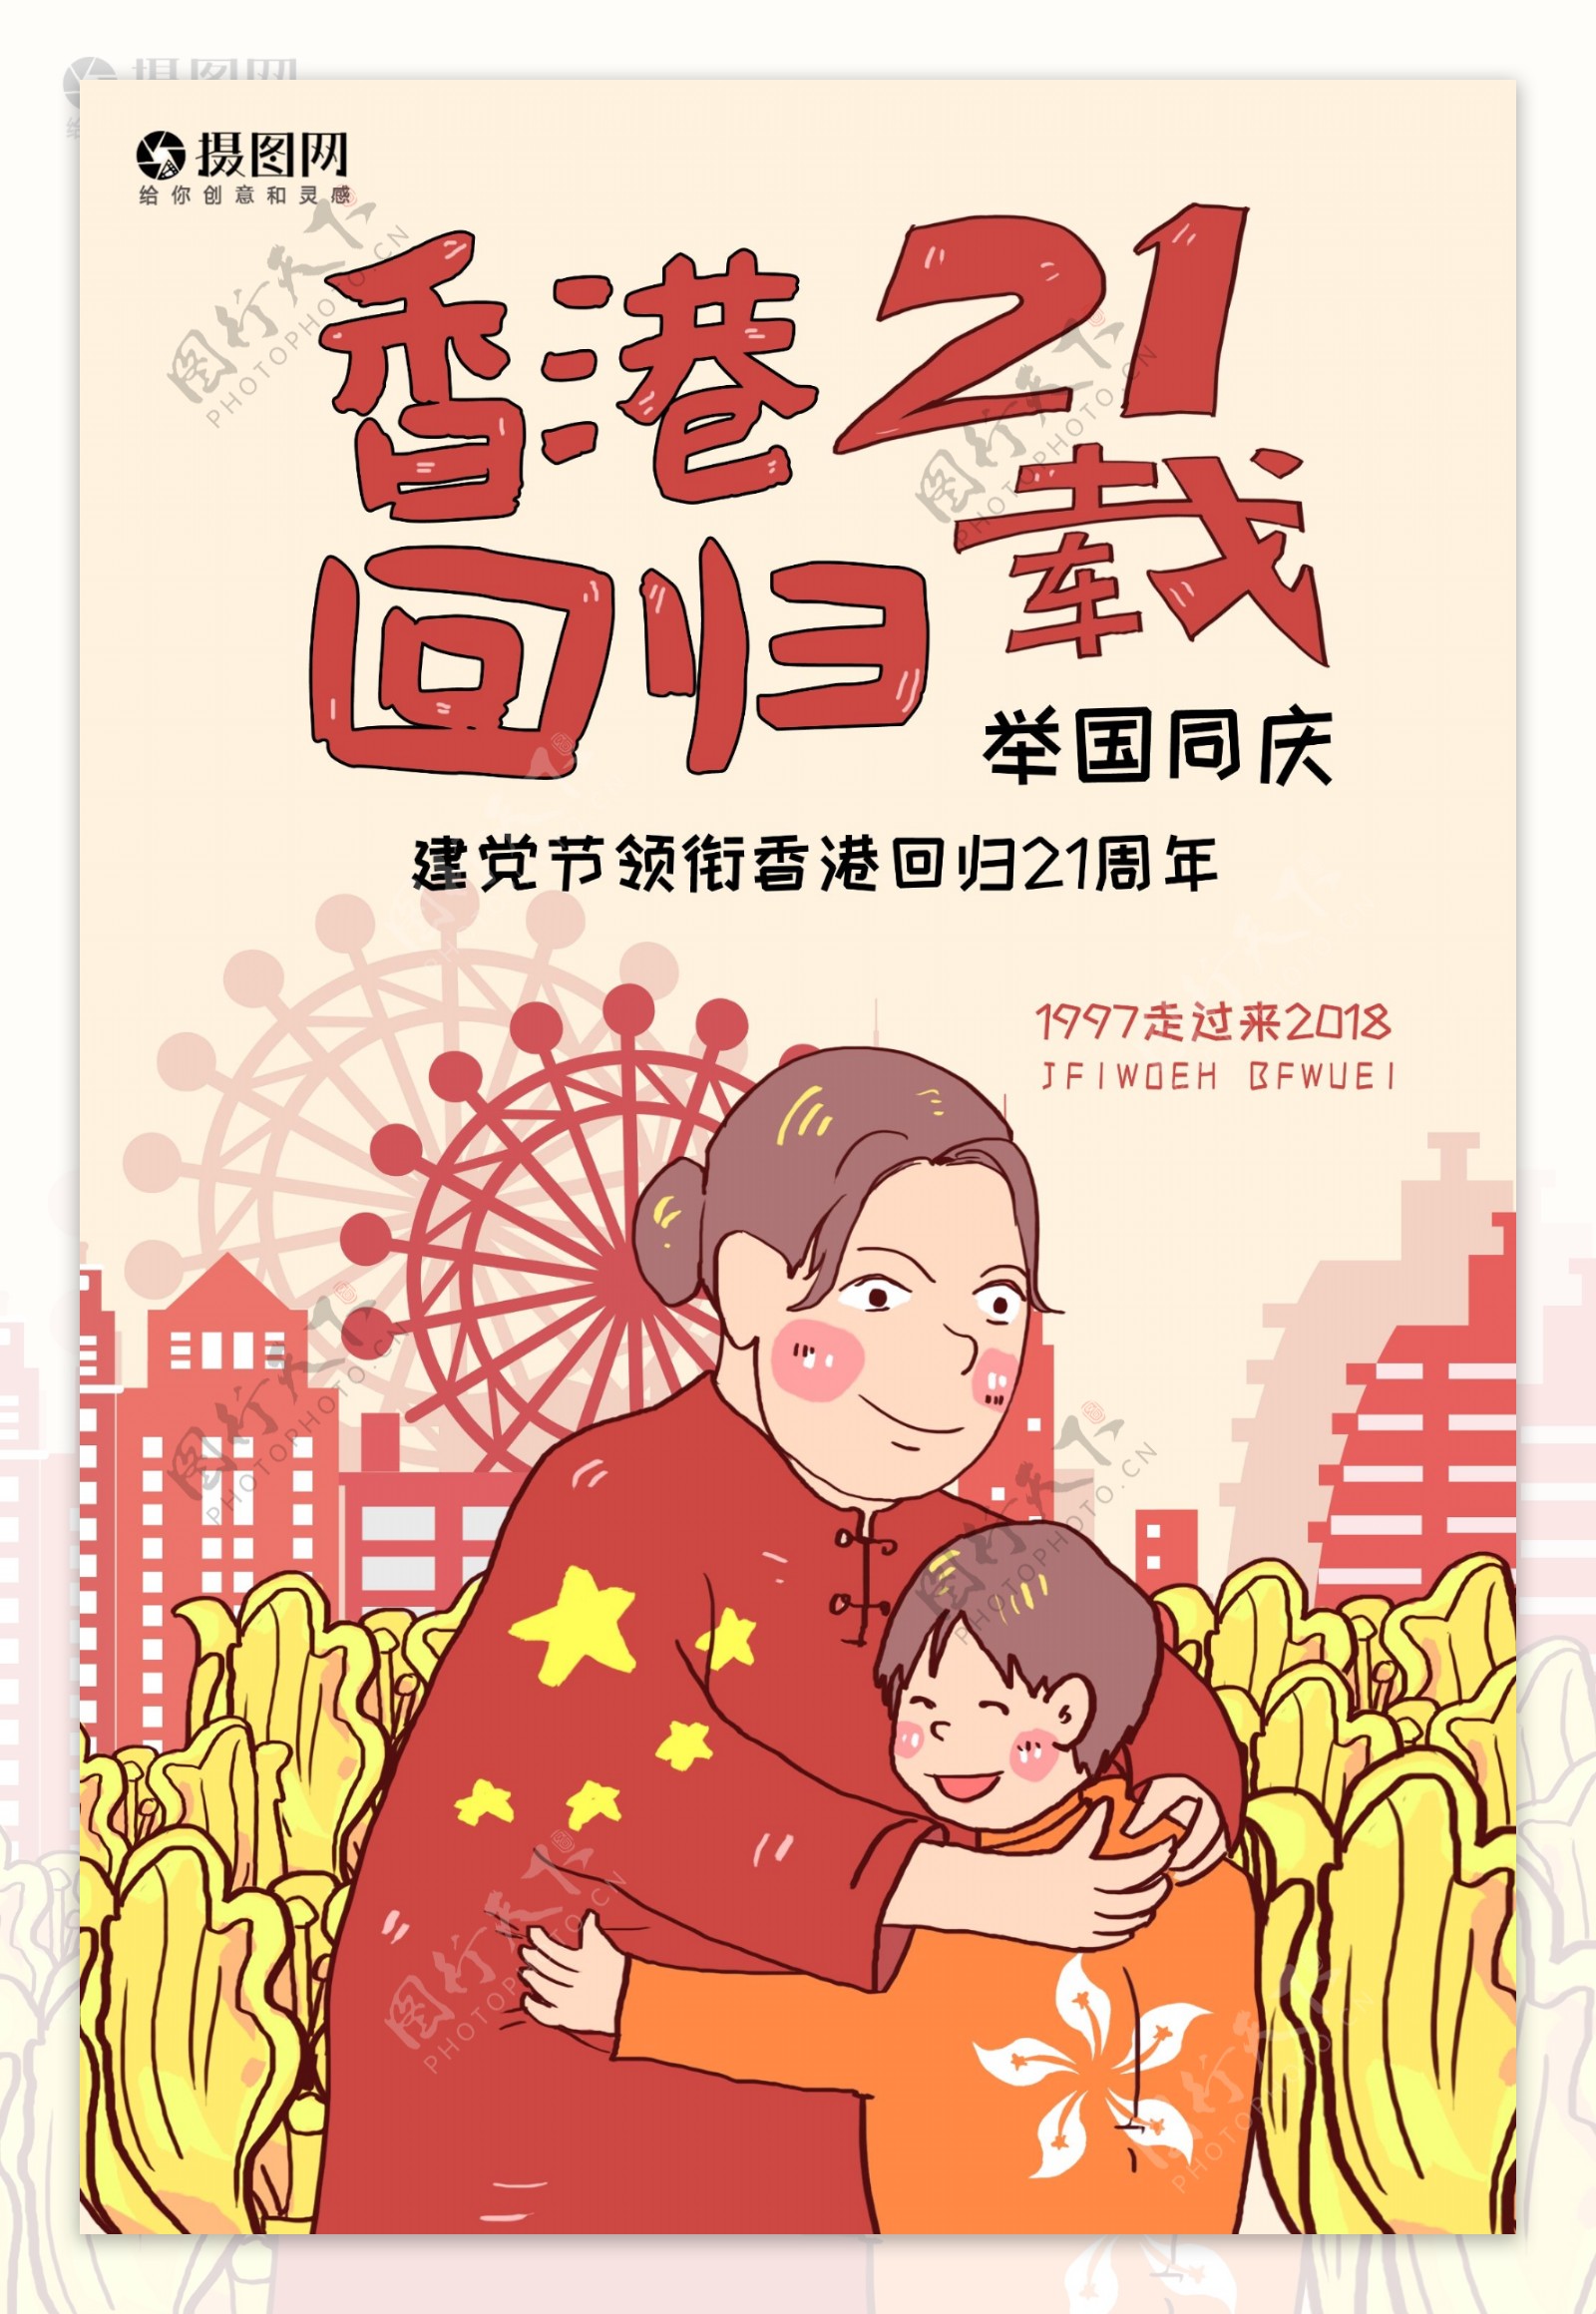 香港回归21年海报设计